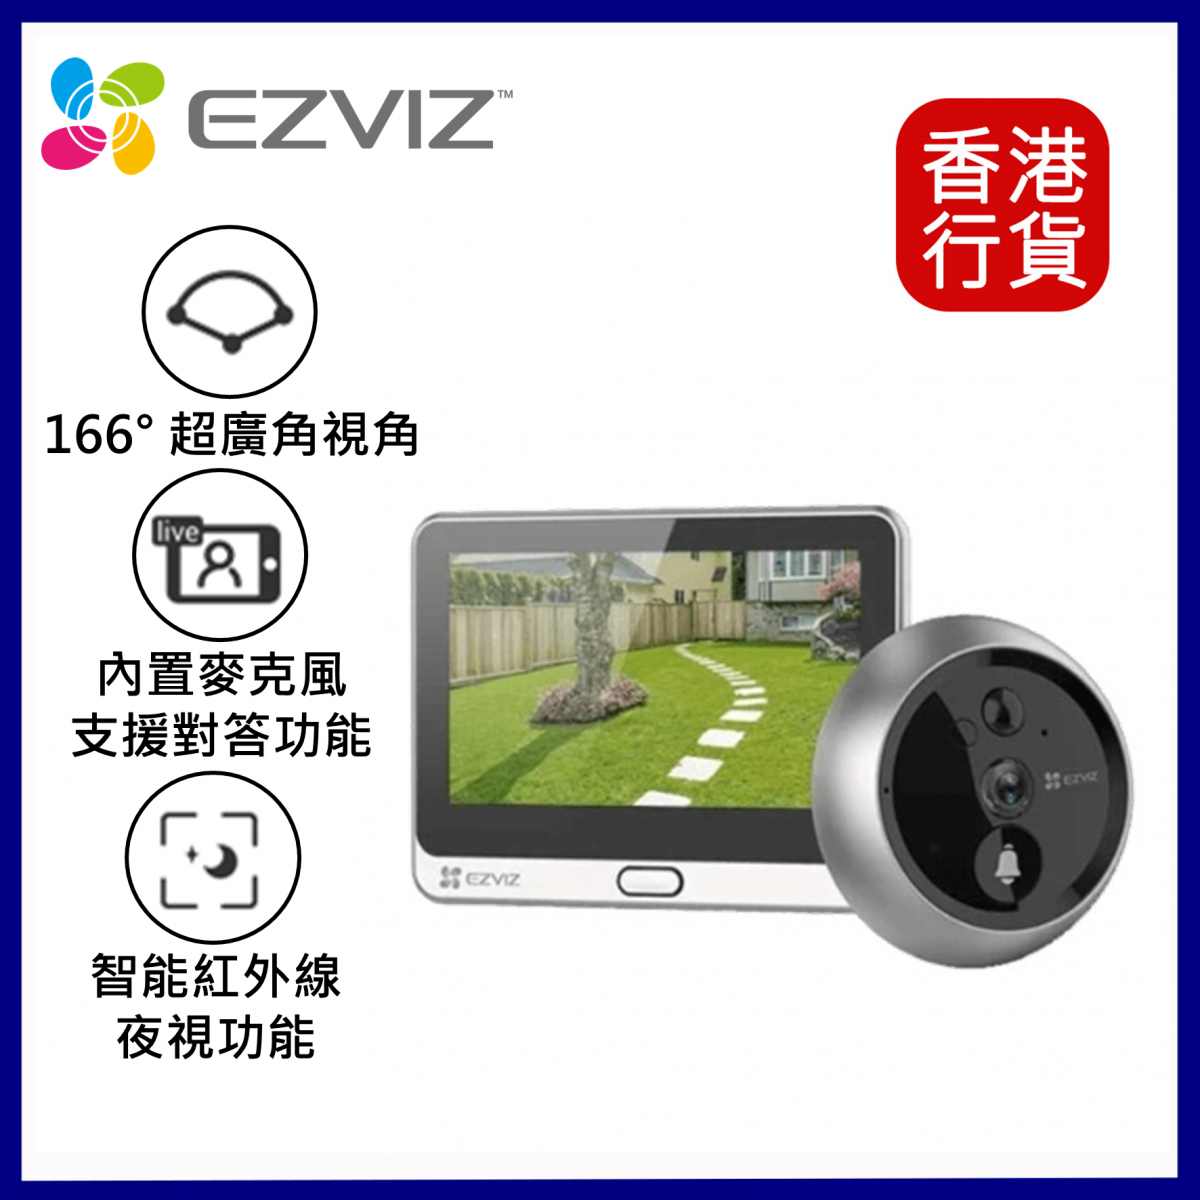 EZVIZ - No more distorted imaging. Get EZVIZ DP2 now and turn on